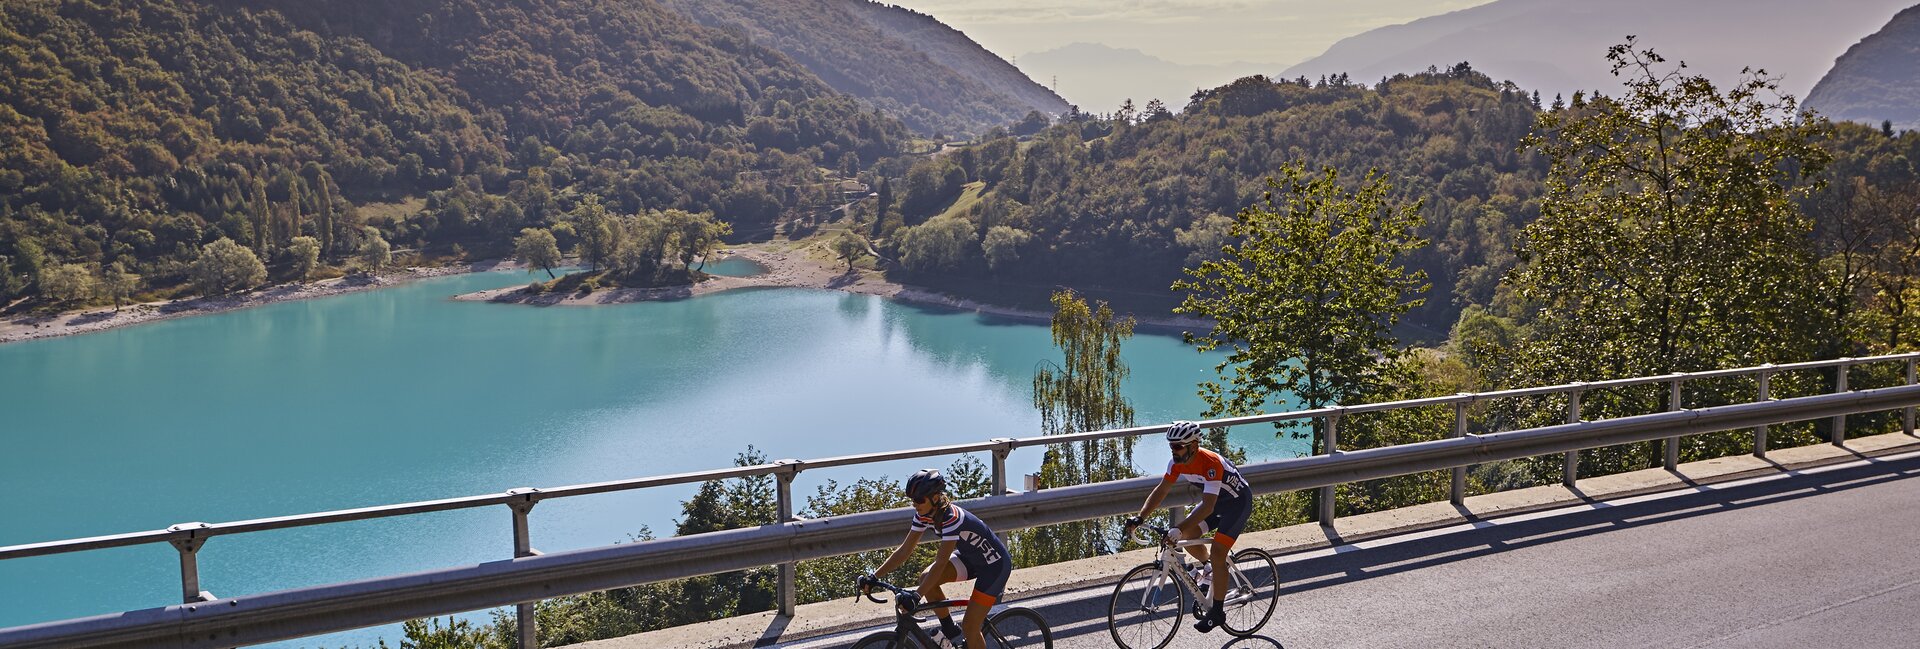 Lake Tenno Italy, legendary climbs